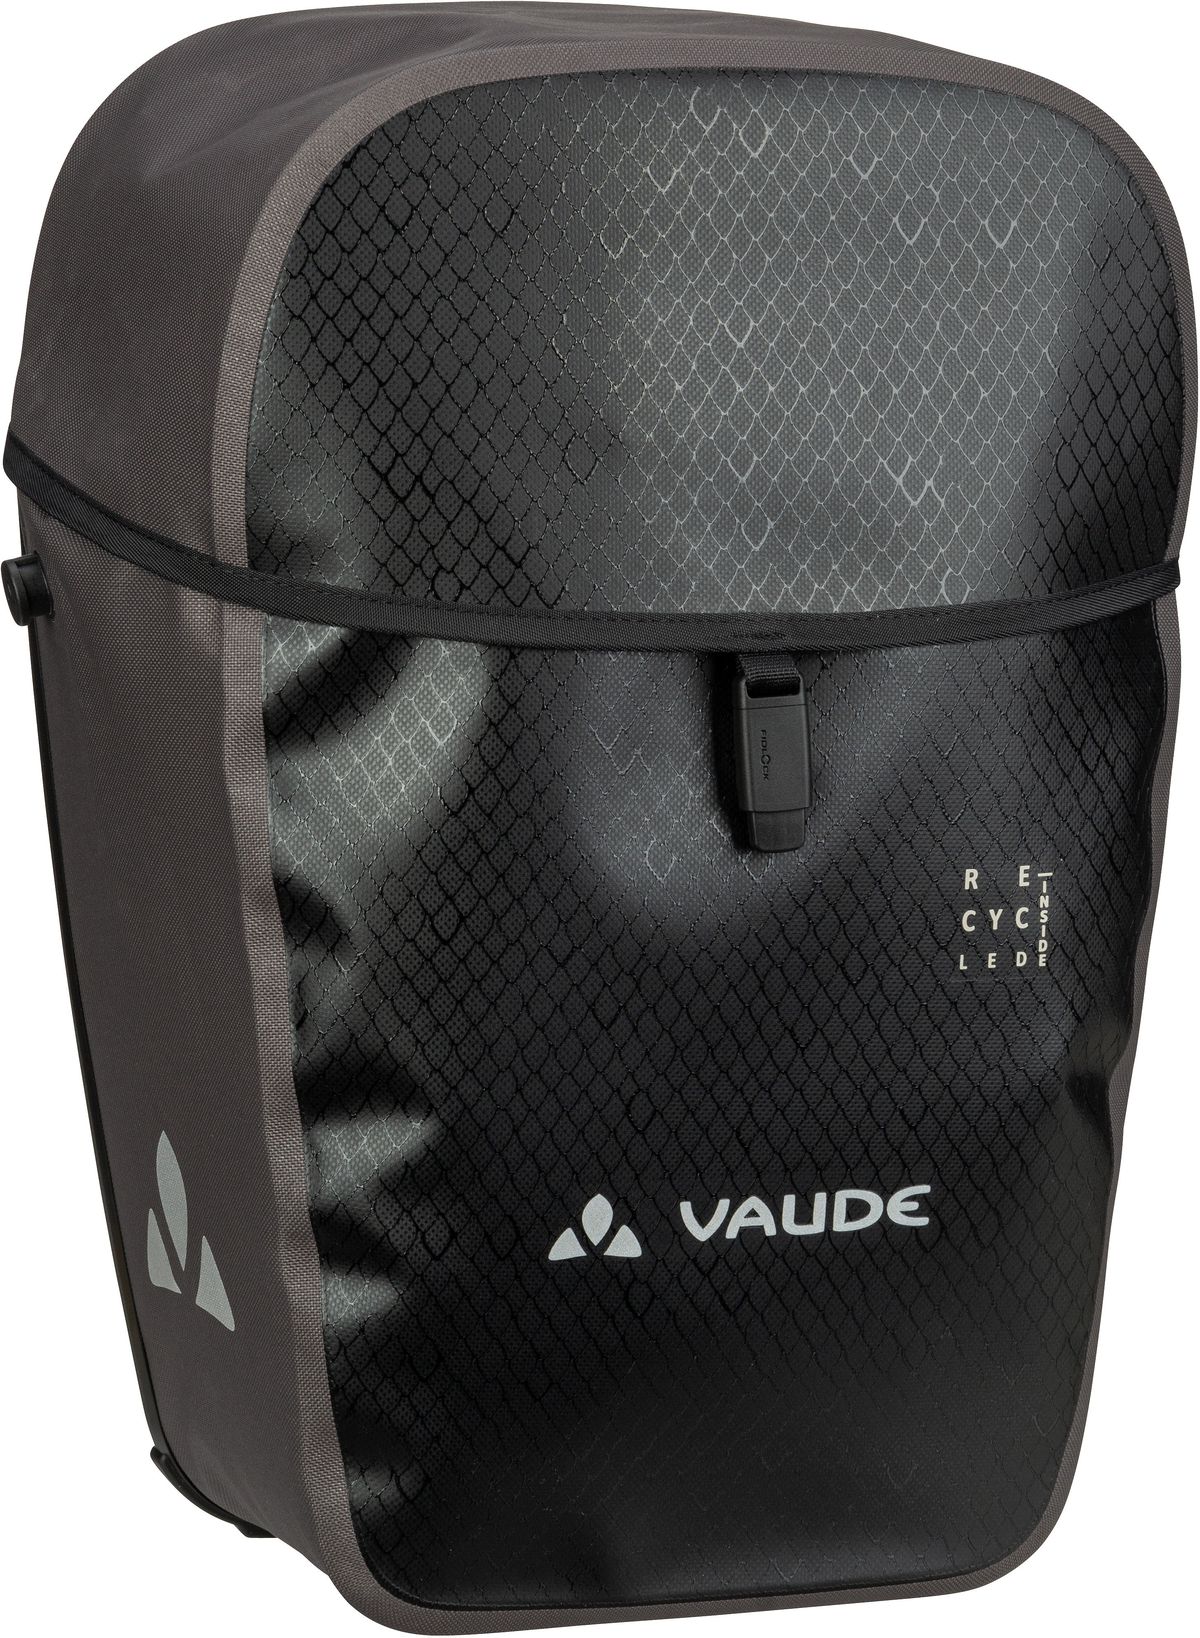 Vaude Aqua Commute Single  in Black (24 Liter), Fahrradtasche